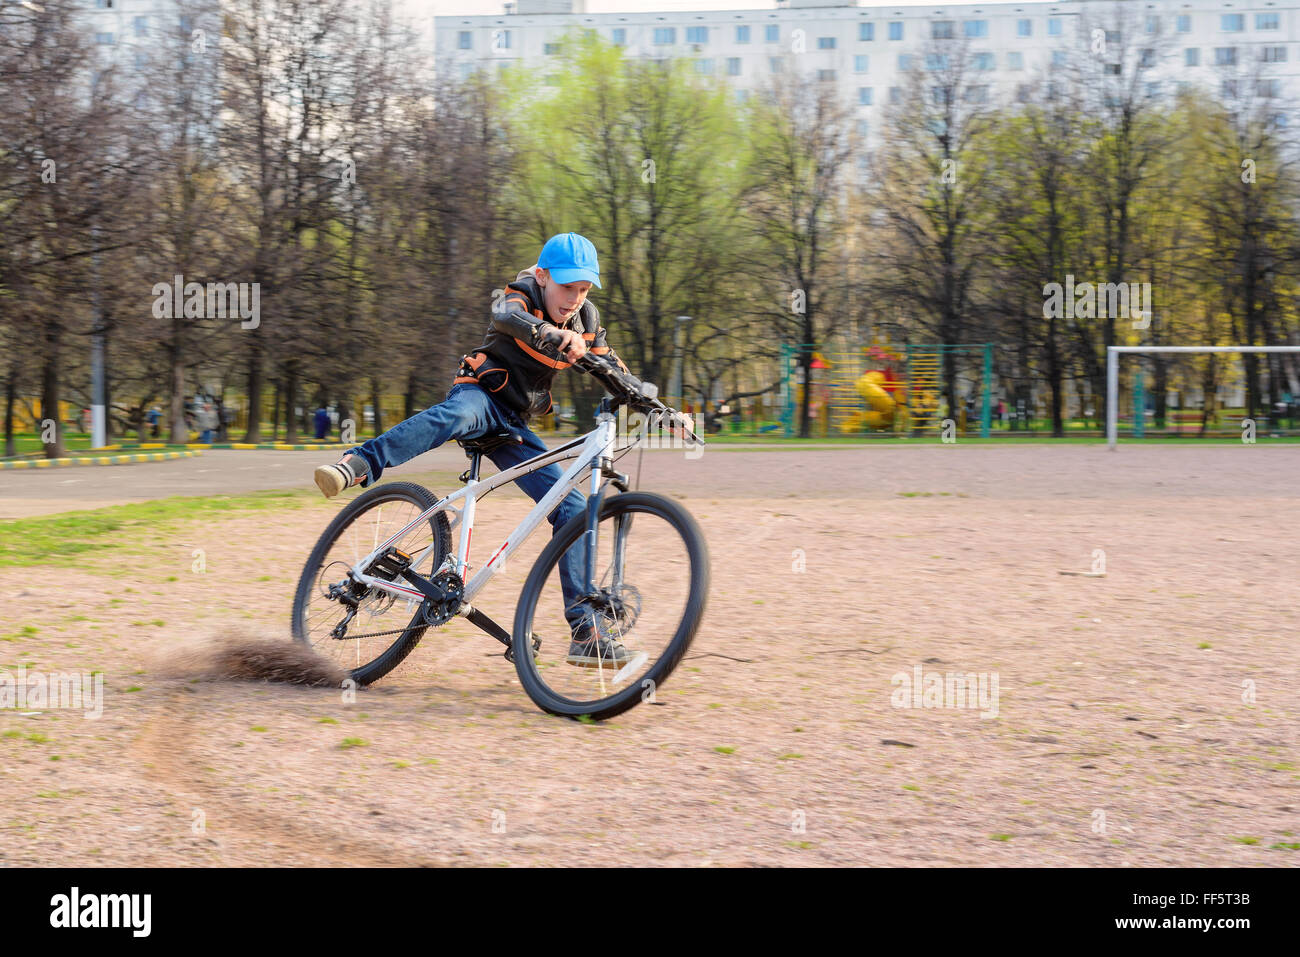 Il ragazzo corse molto veloce e frena bruscamente la bicicletta. Foto Stock